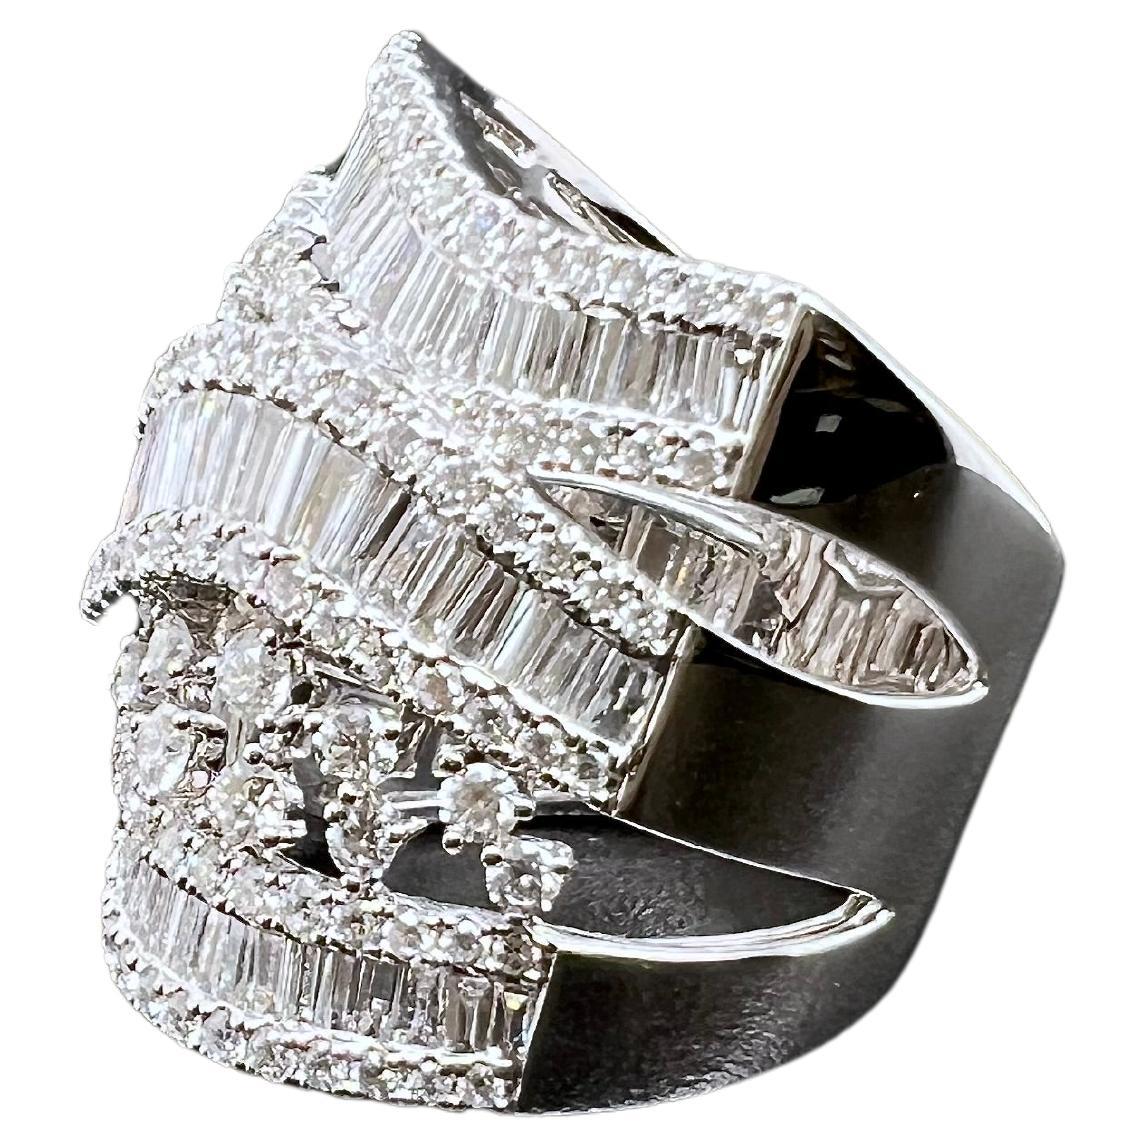 Dieses wunderschöne breite Diamantband ist einfach wunderschön! Die 3 wellenförmigen Reihen von Baguette-Diamanten sind parallel zueinander gestapelt, während die runden Diamanten die Reihen voneinander trennen, um einen künstlerischen Look zu